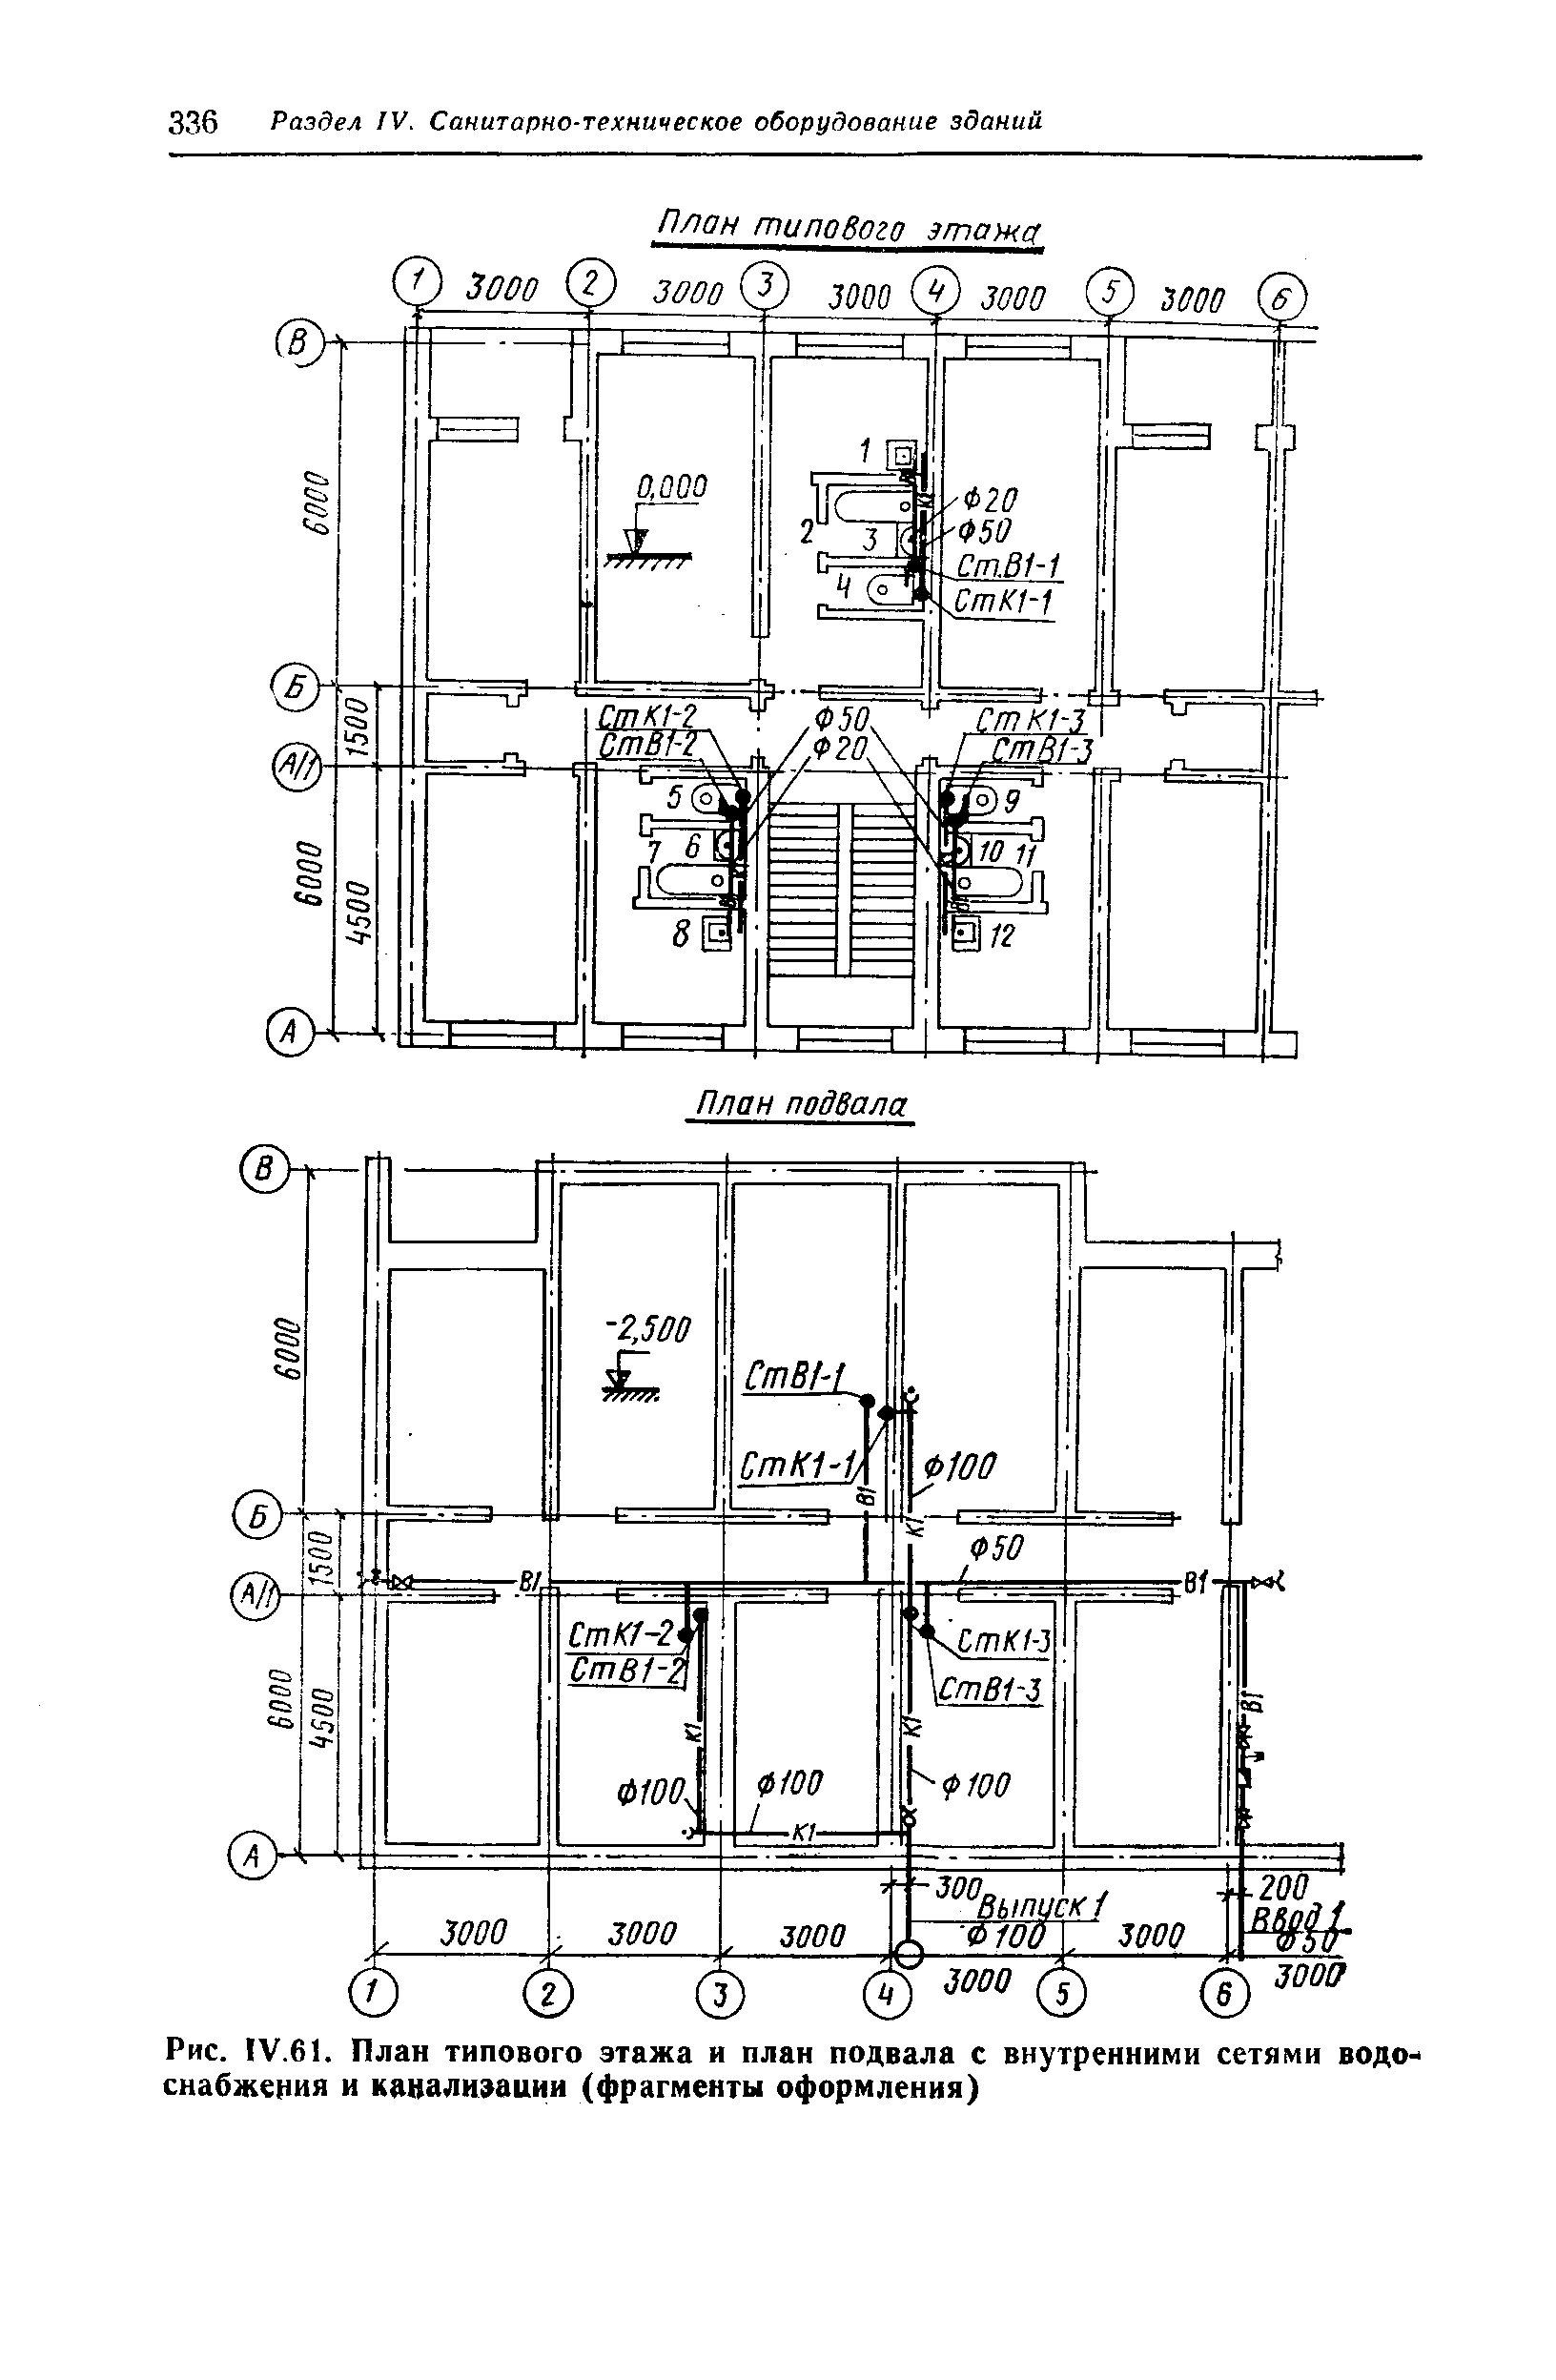 На рисунке 126 изображен план подземного лабиринта подвала из 16 комнат